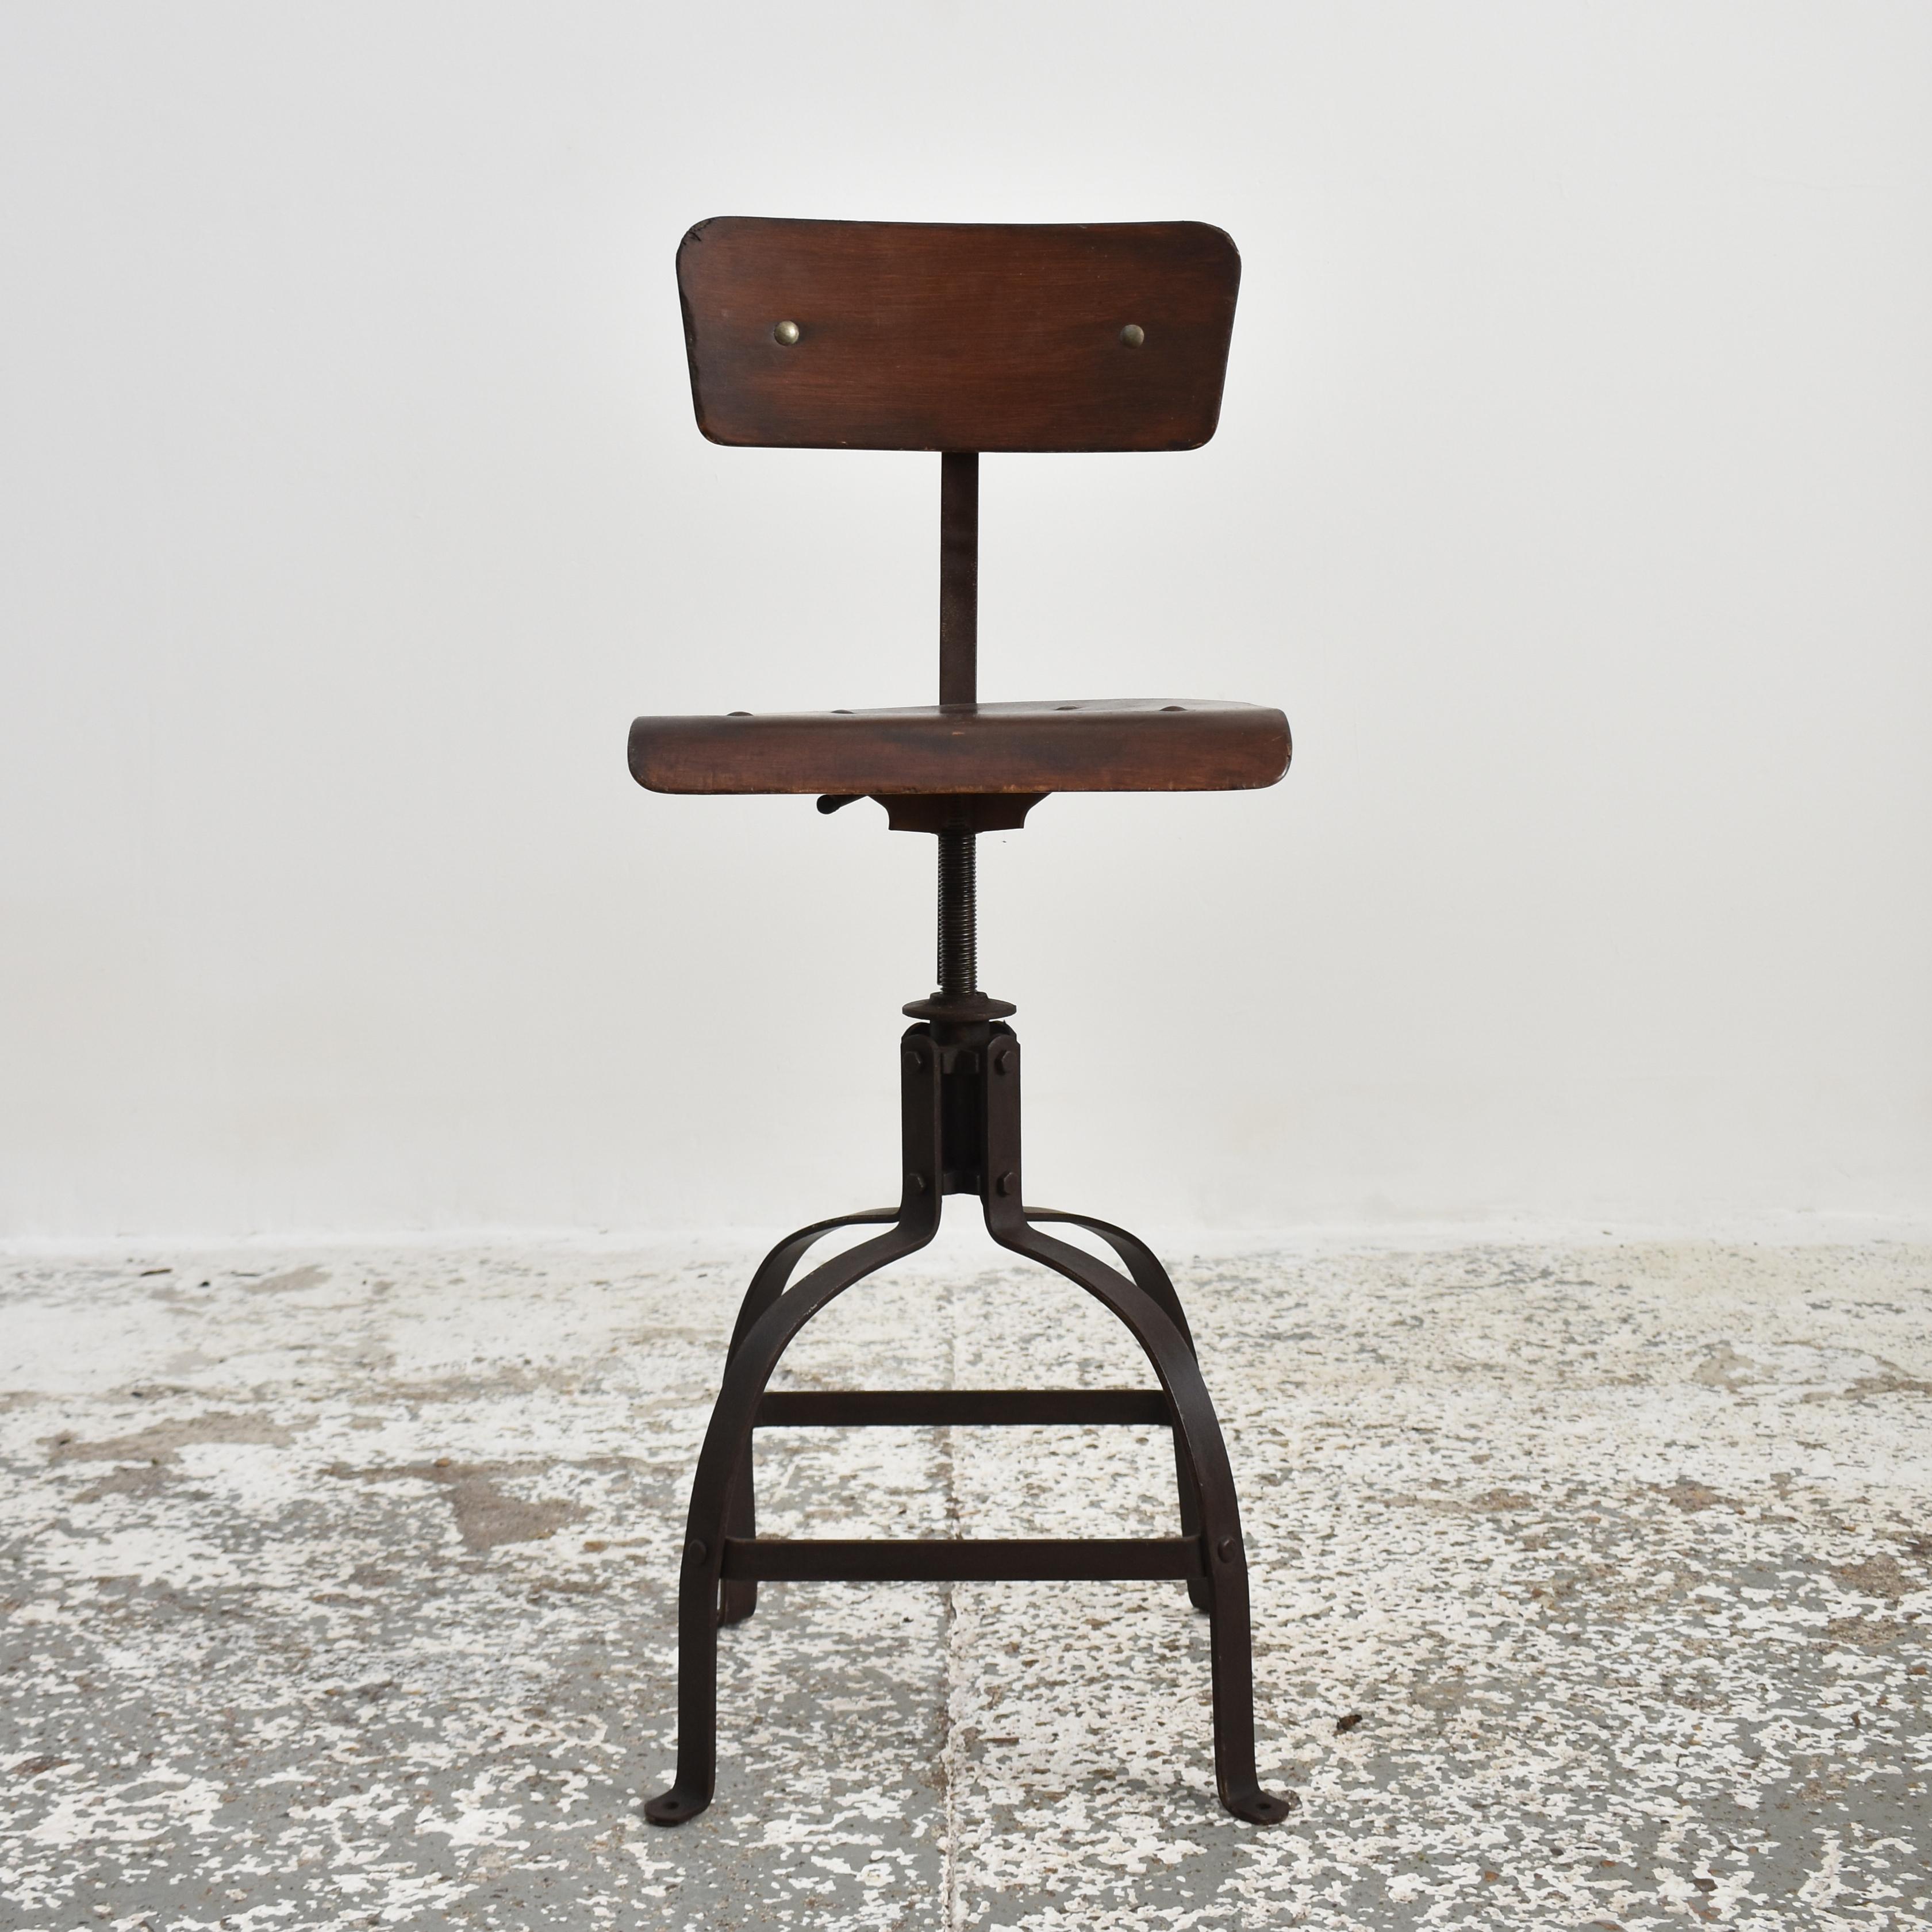 Original französischer Bienaise-Stuhl Modell 204 - E

Ein original Bienaise Industriestuhl. Ein klassisches französisches Industriedesign der 1940er Jahre, hergestellt von den Gebrüdern Nelson - Modell Nr. 204. Dieser Stuhl wäre in der Mitte des